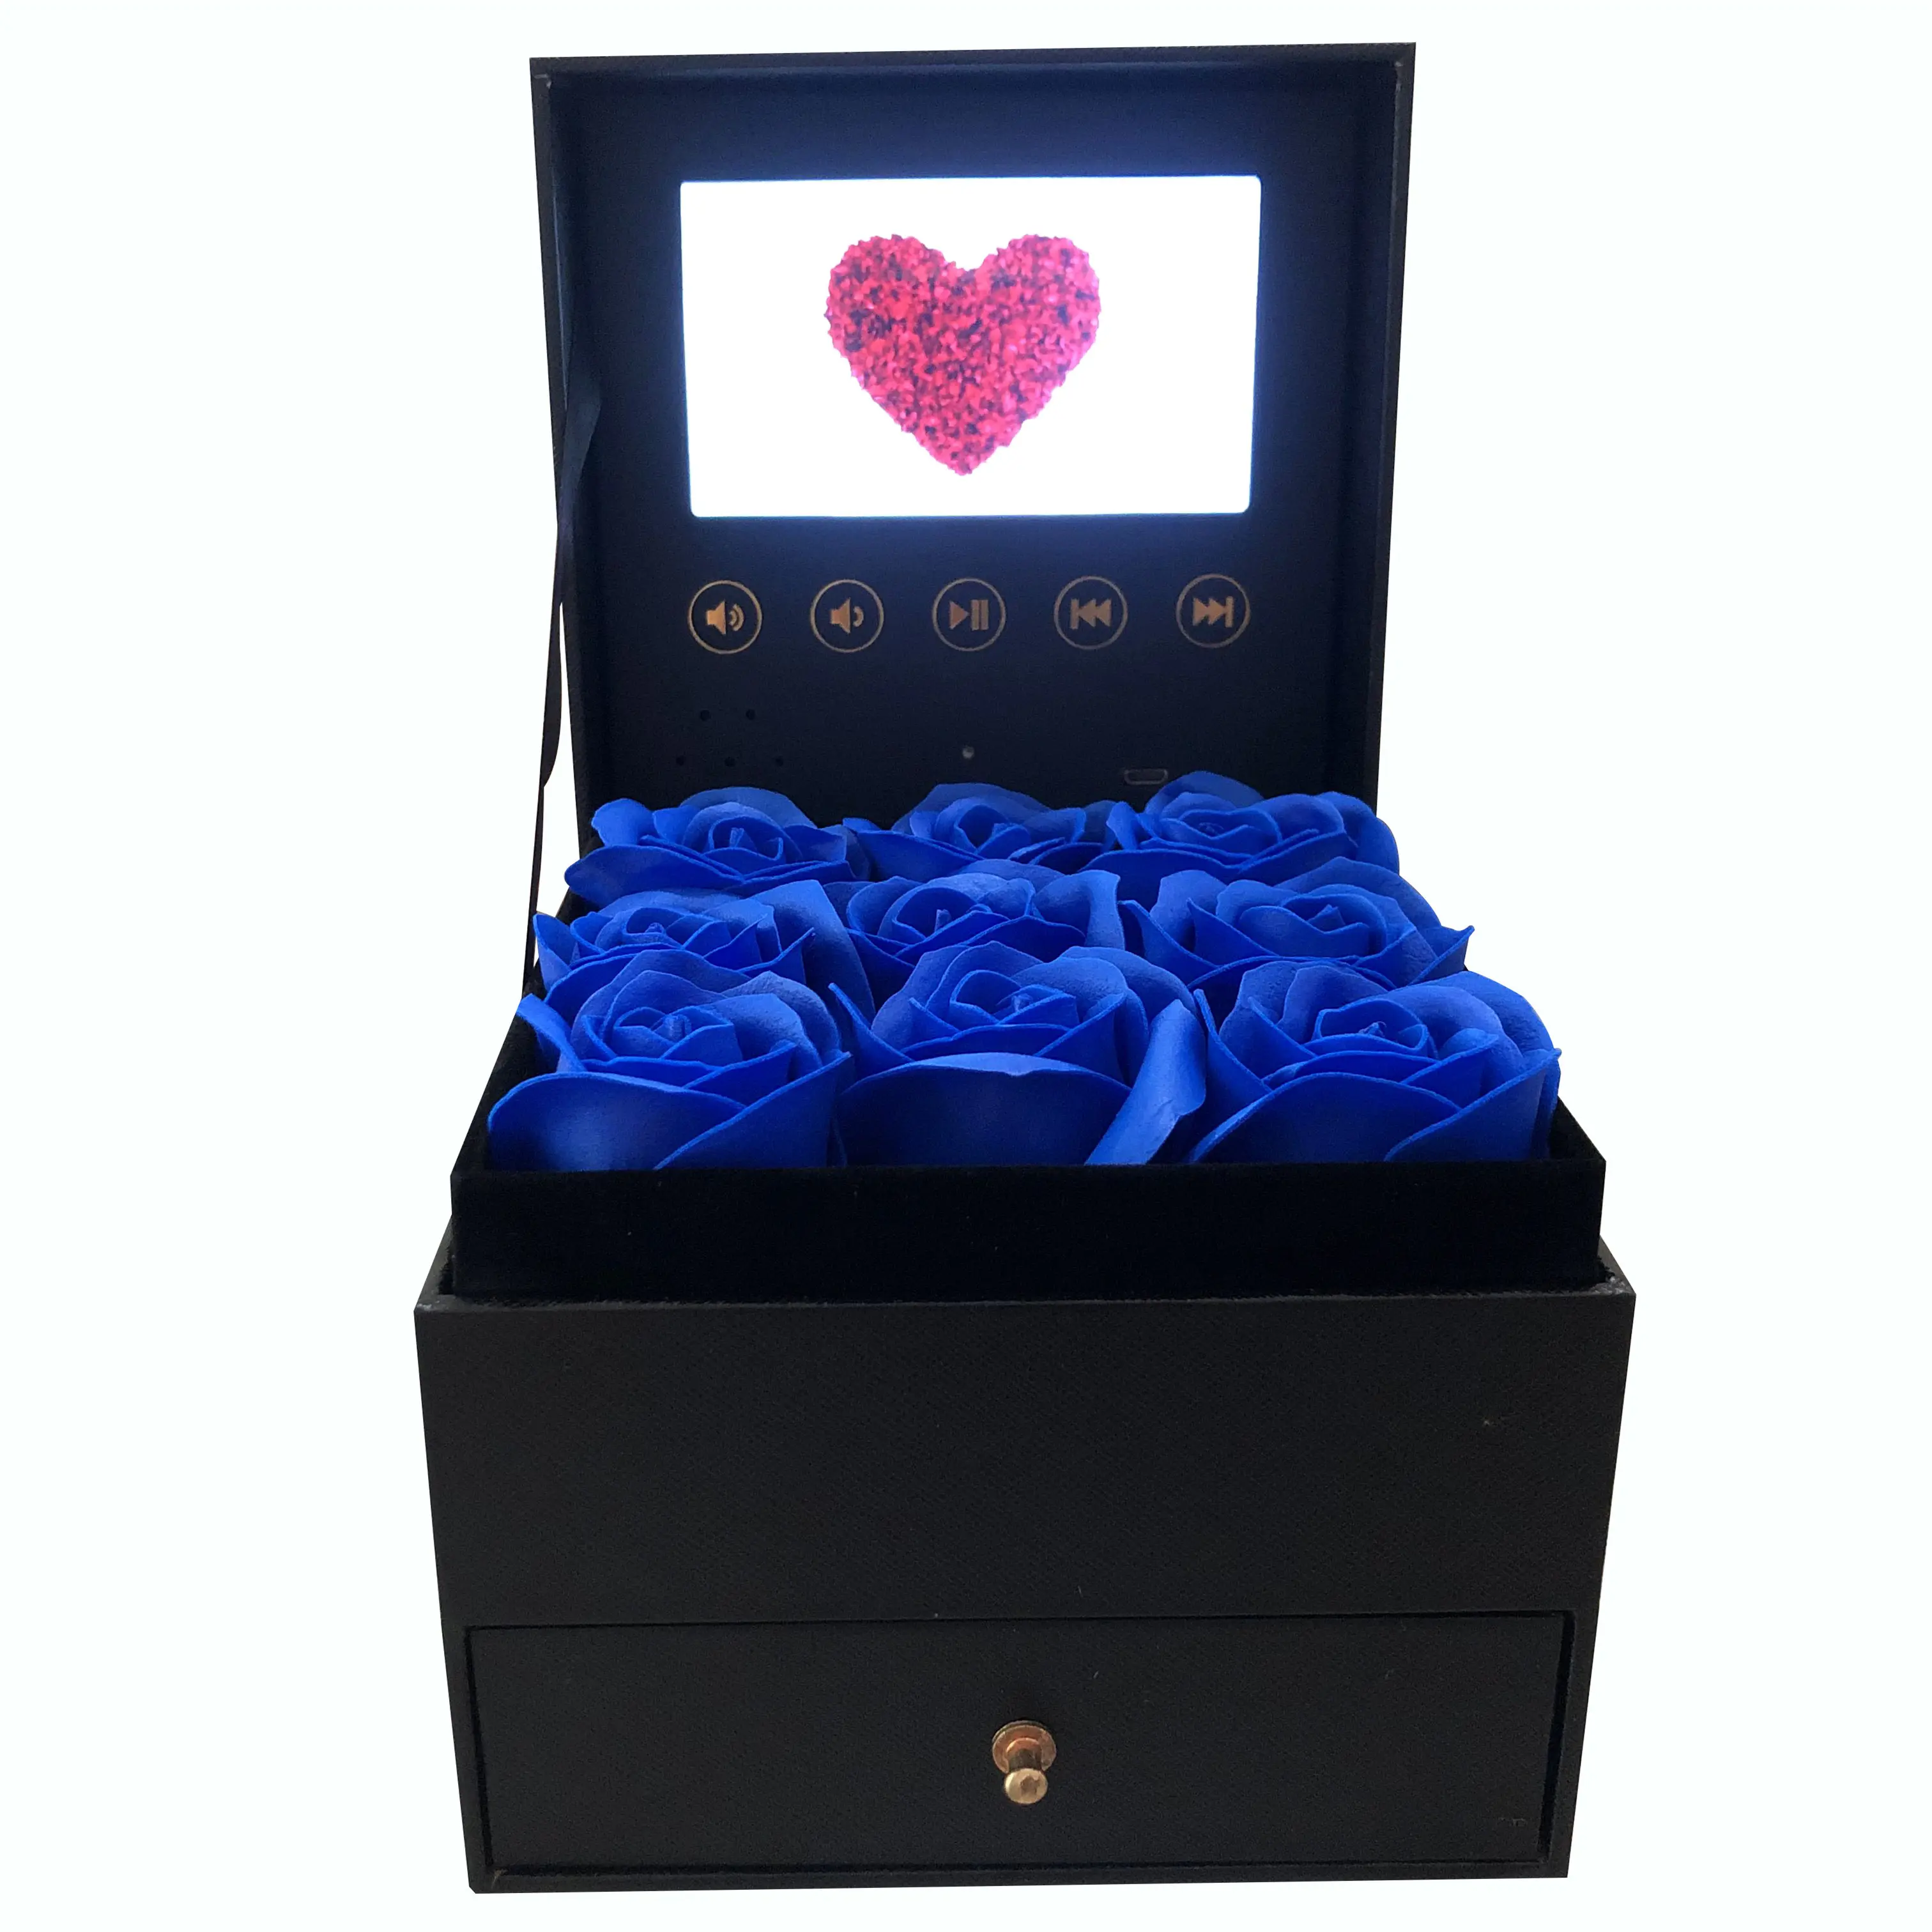 Carica il tuo Video scatola schermo Lcd artificiale eterno fiori rossi decorazioni anniversario rose conservati